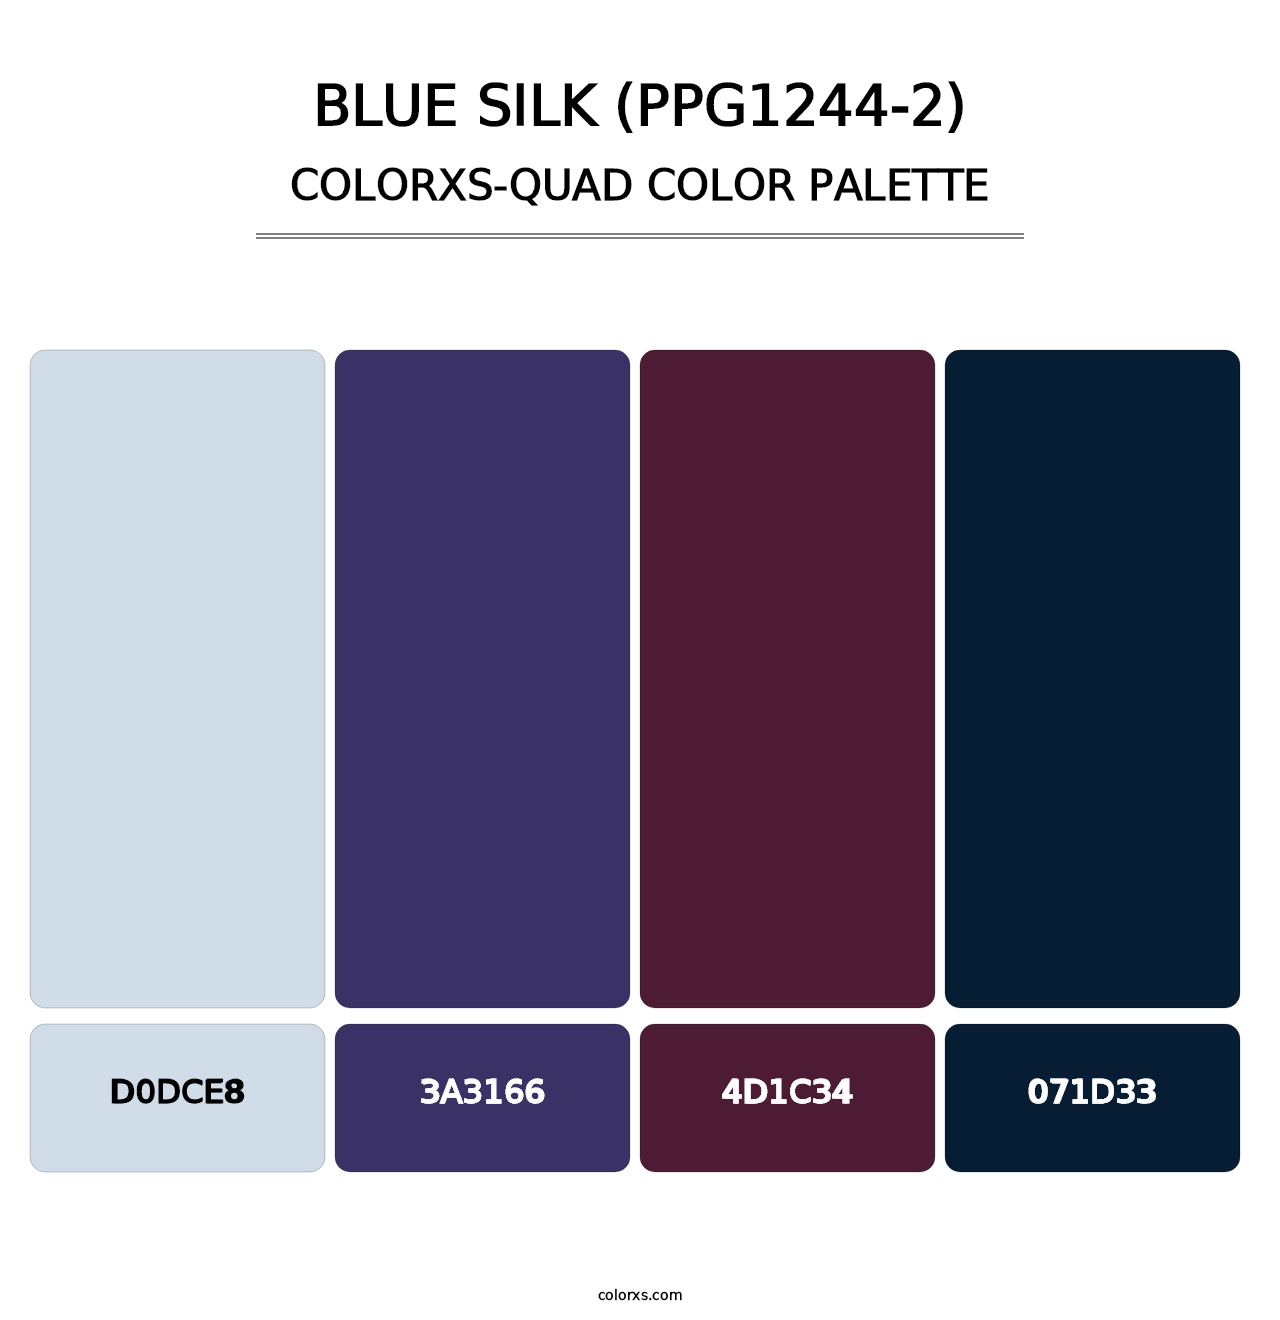 Blue Silk (PPG1244-2) - Colorxs Quad Palette